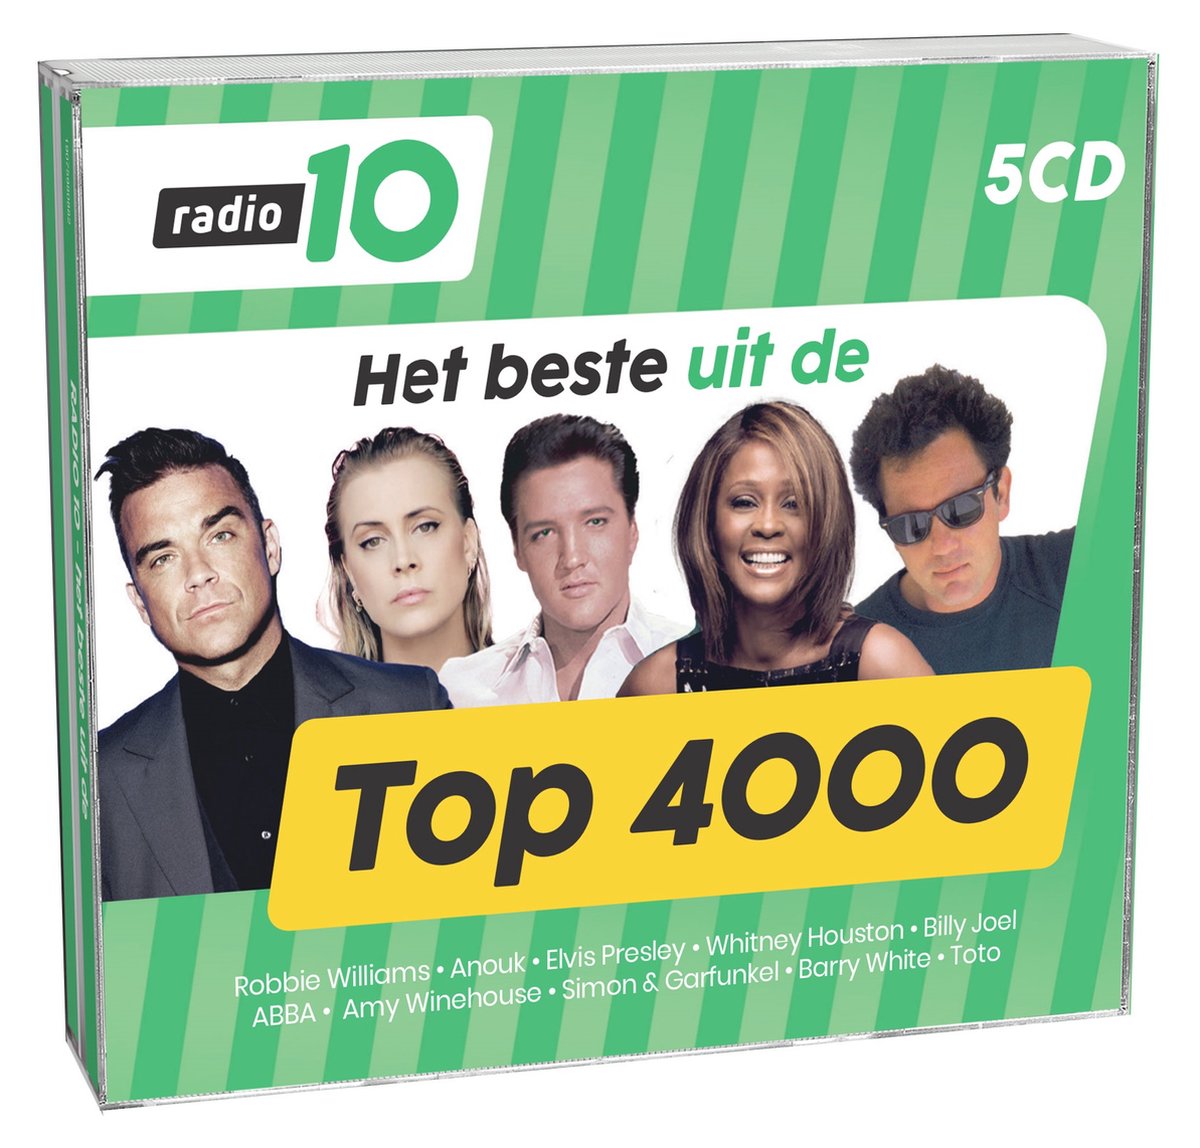 Het Beste Uit 15 Jaar Radio 10 Top 4000, Top 40 | CD (album) | Muziek |  bol.com